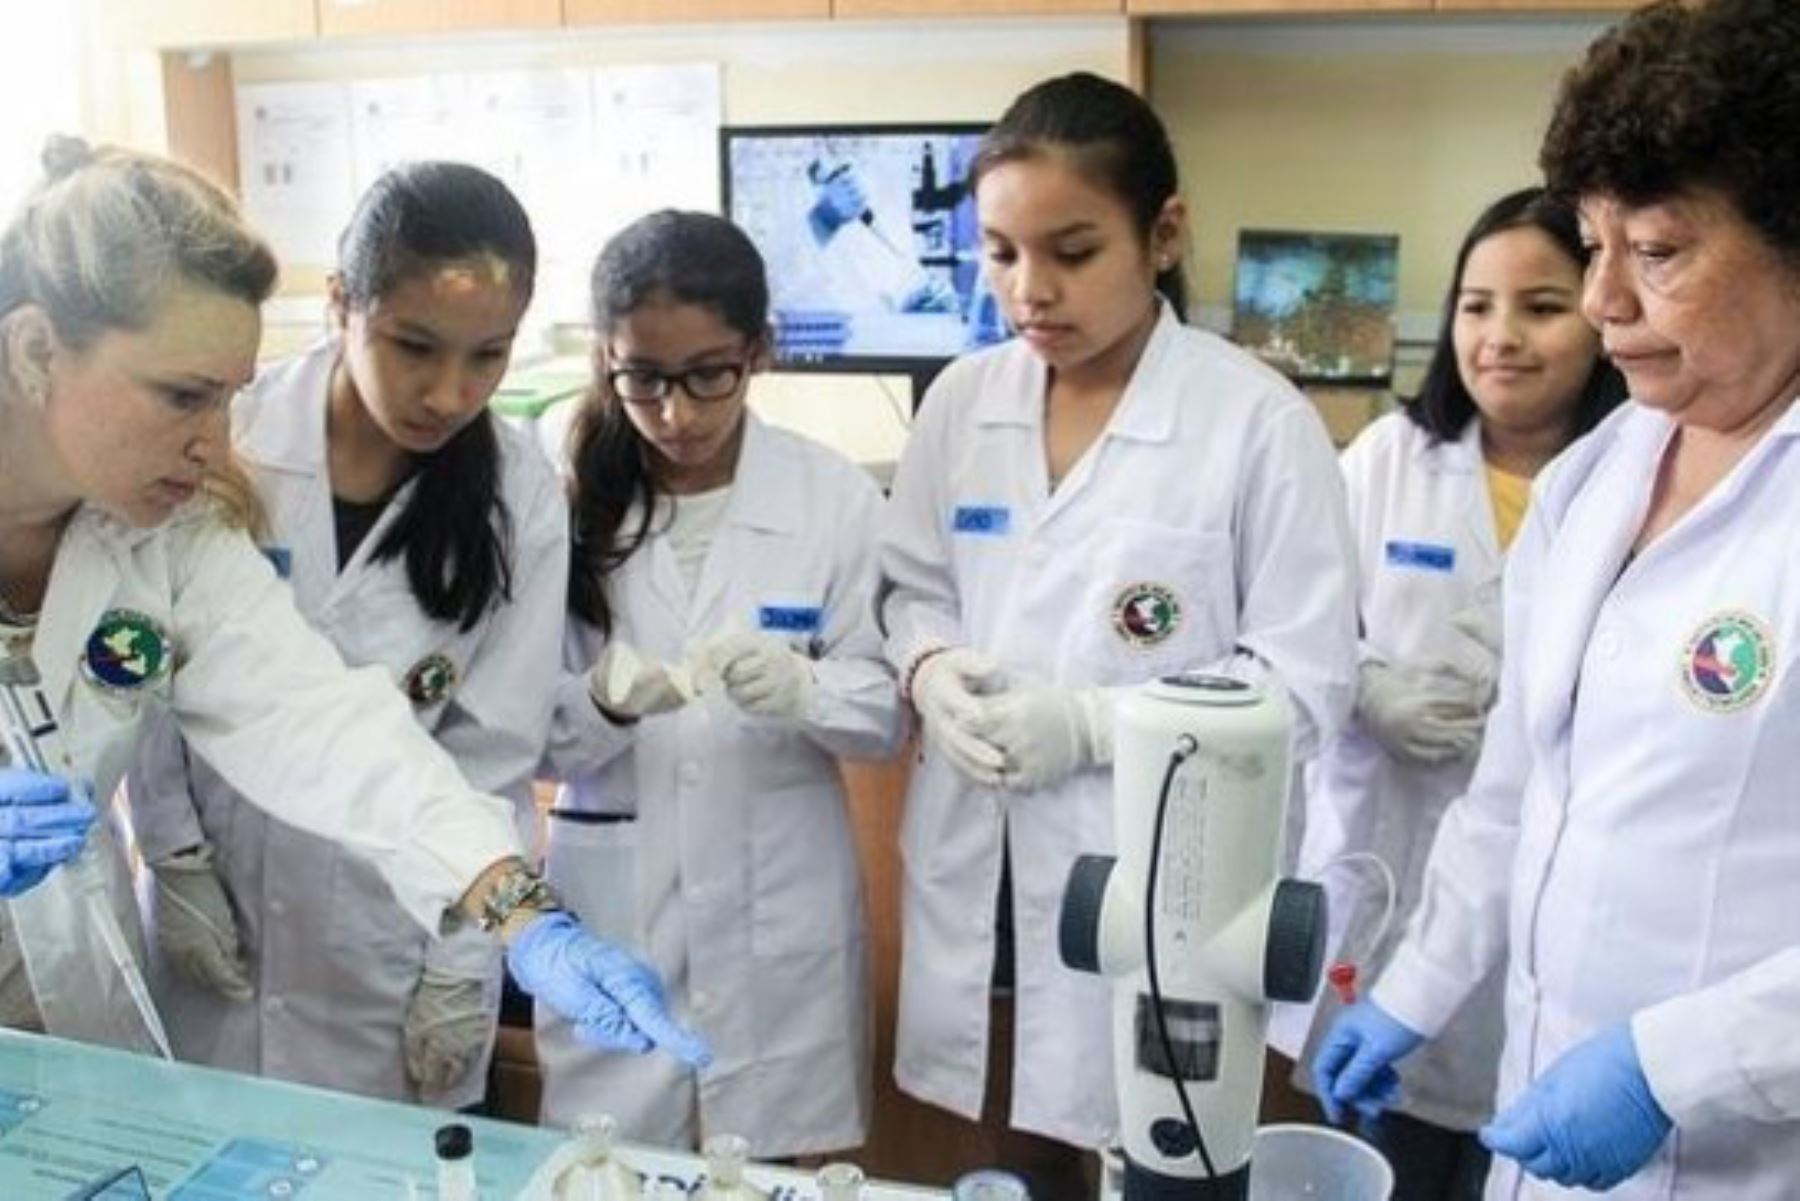 En el marco del Día Internacional de la Mujer y la Niña en la Ciencia, el Instituto del Mar del Perú – Imarpe, lanzó la iniciativa: "Por un mar de científicas".